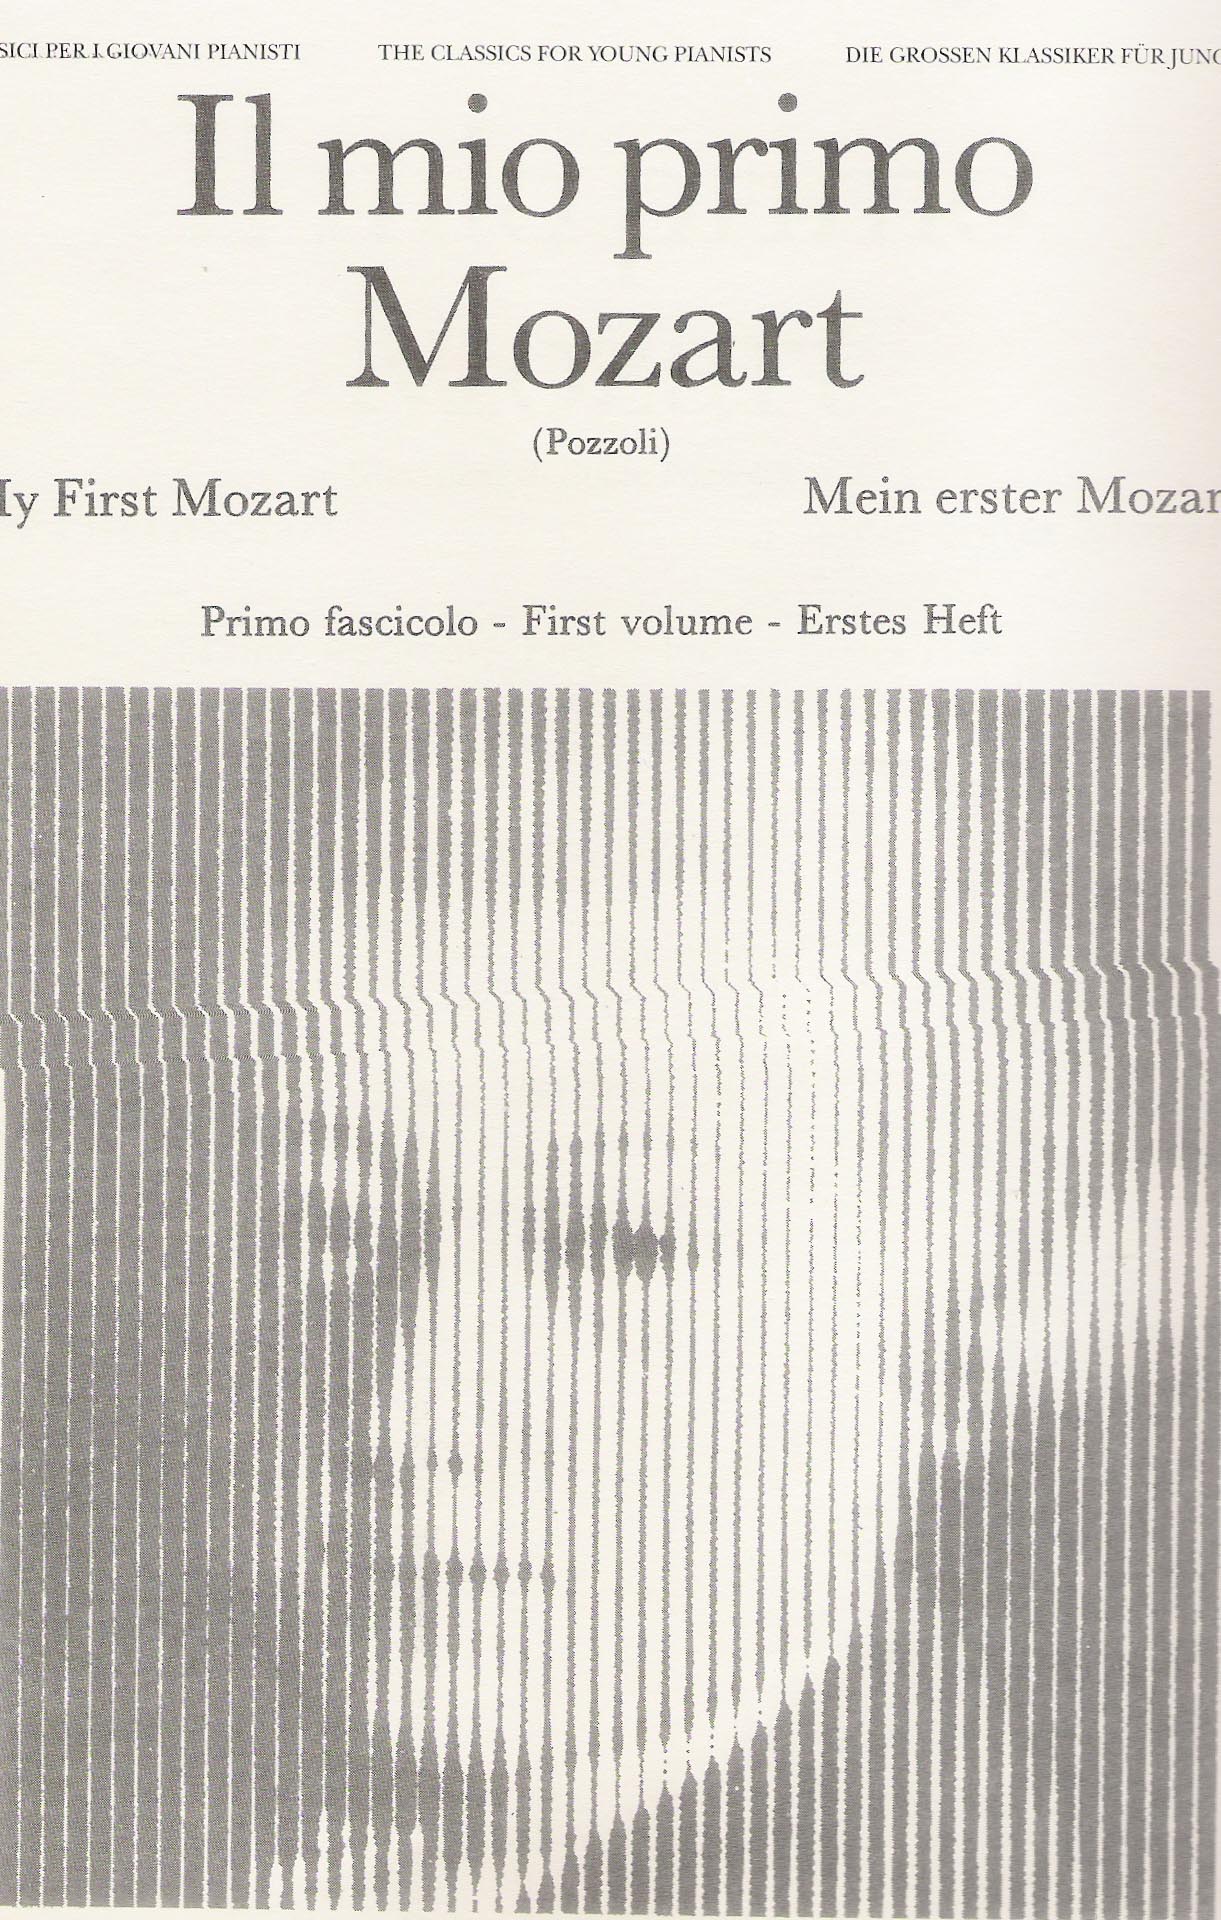 Il mio primo Mozart